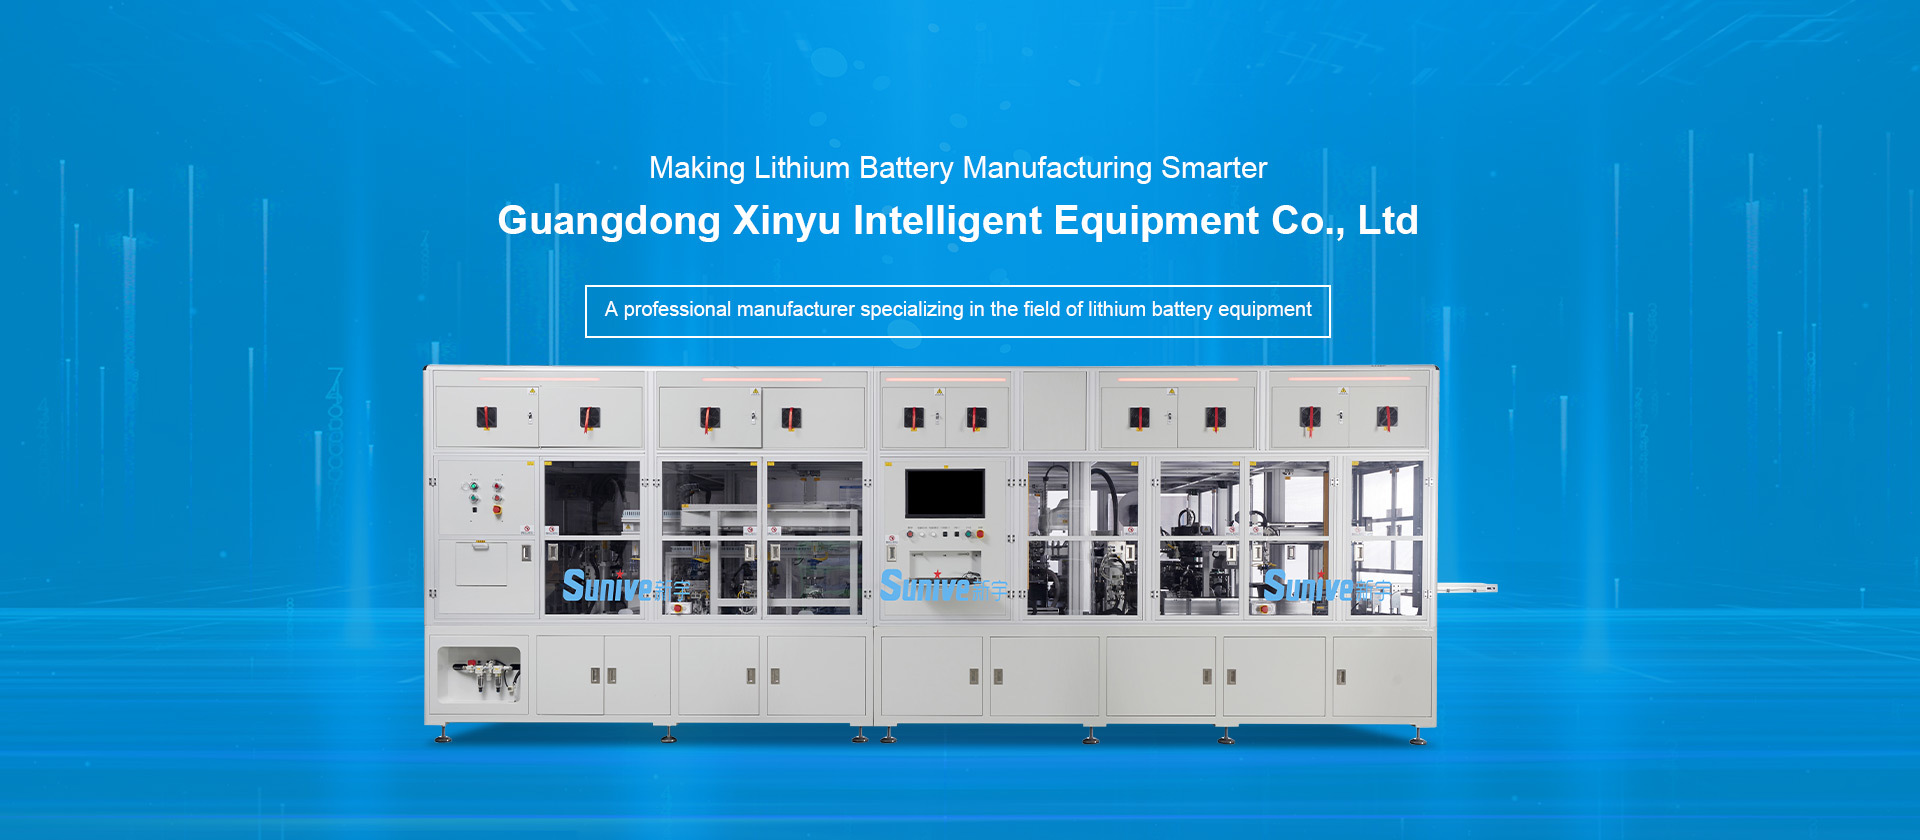 Guangdong Xinyu Intelligent Equipment Co., Ltd